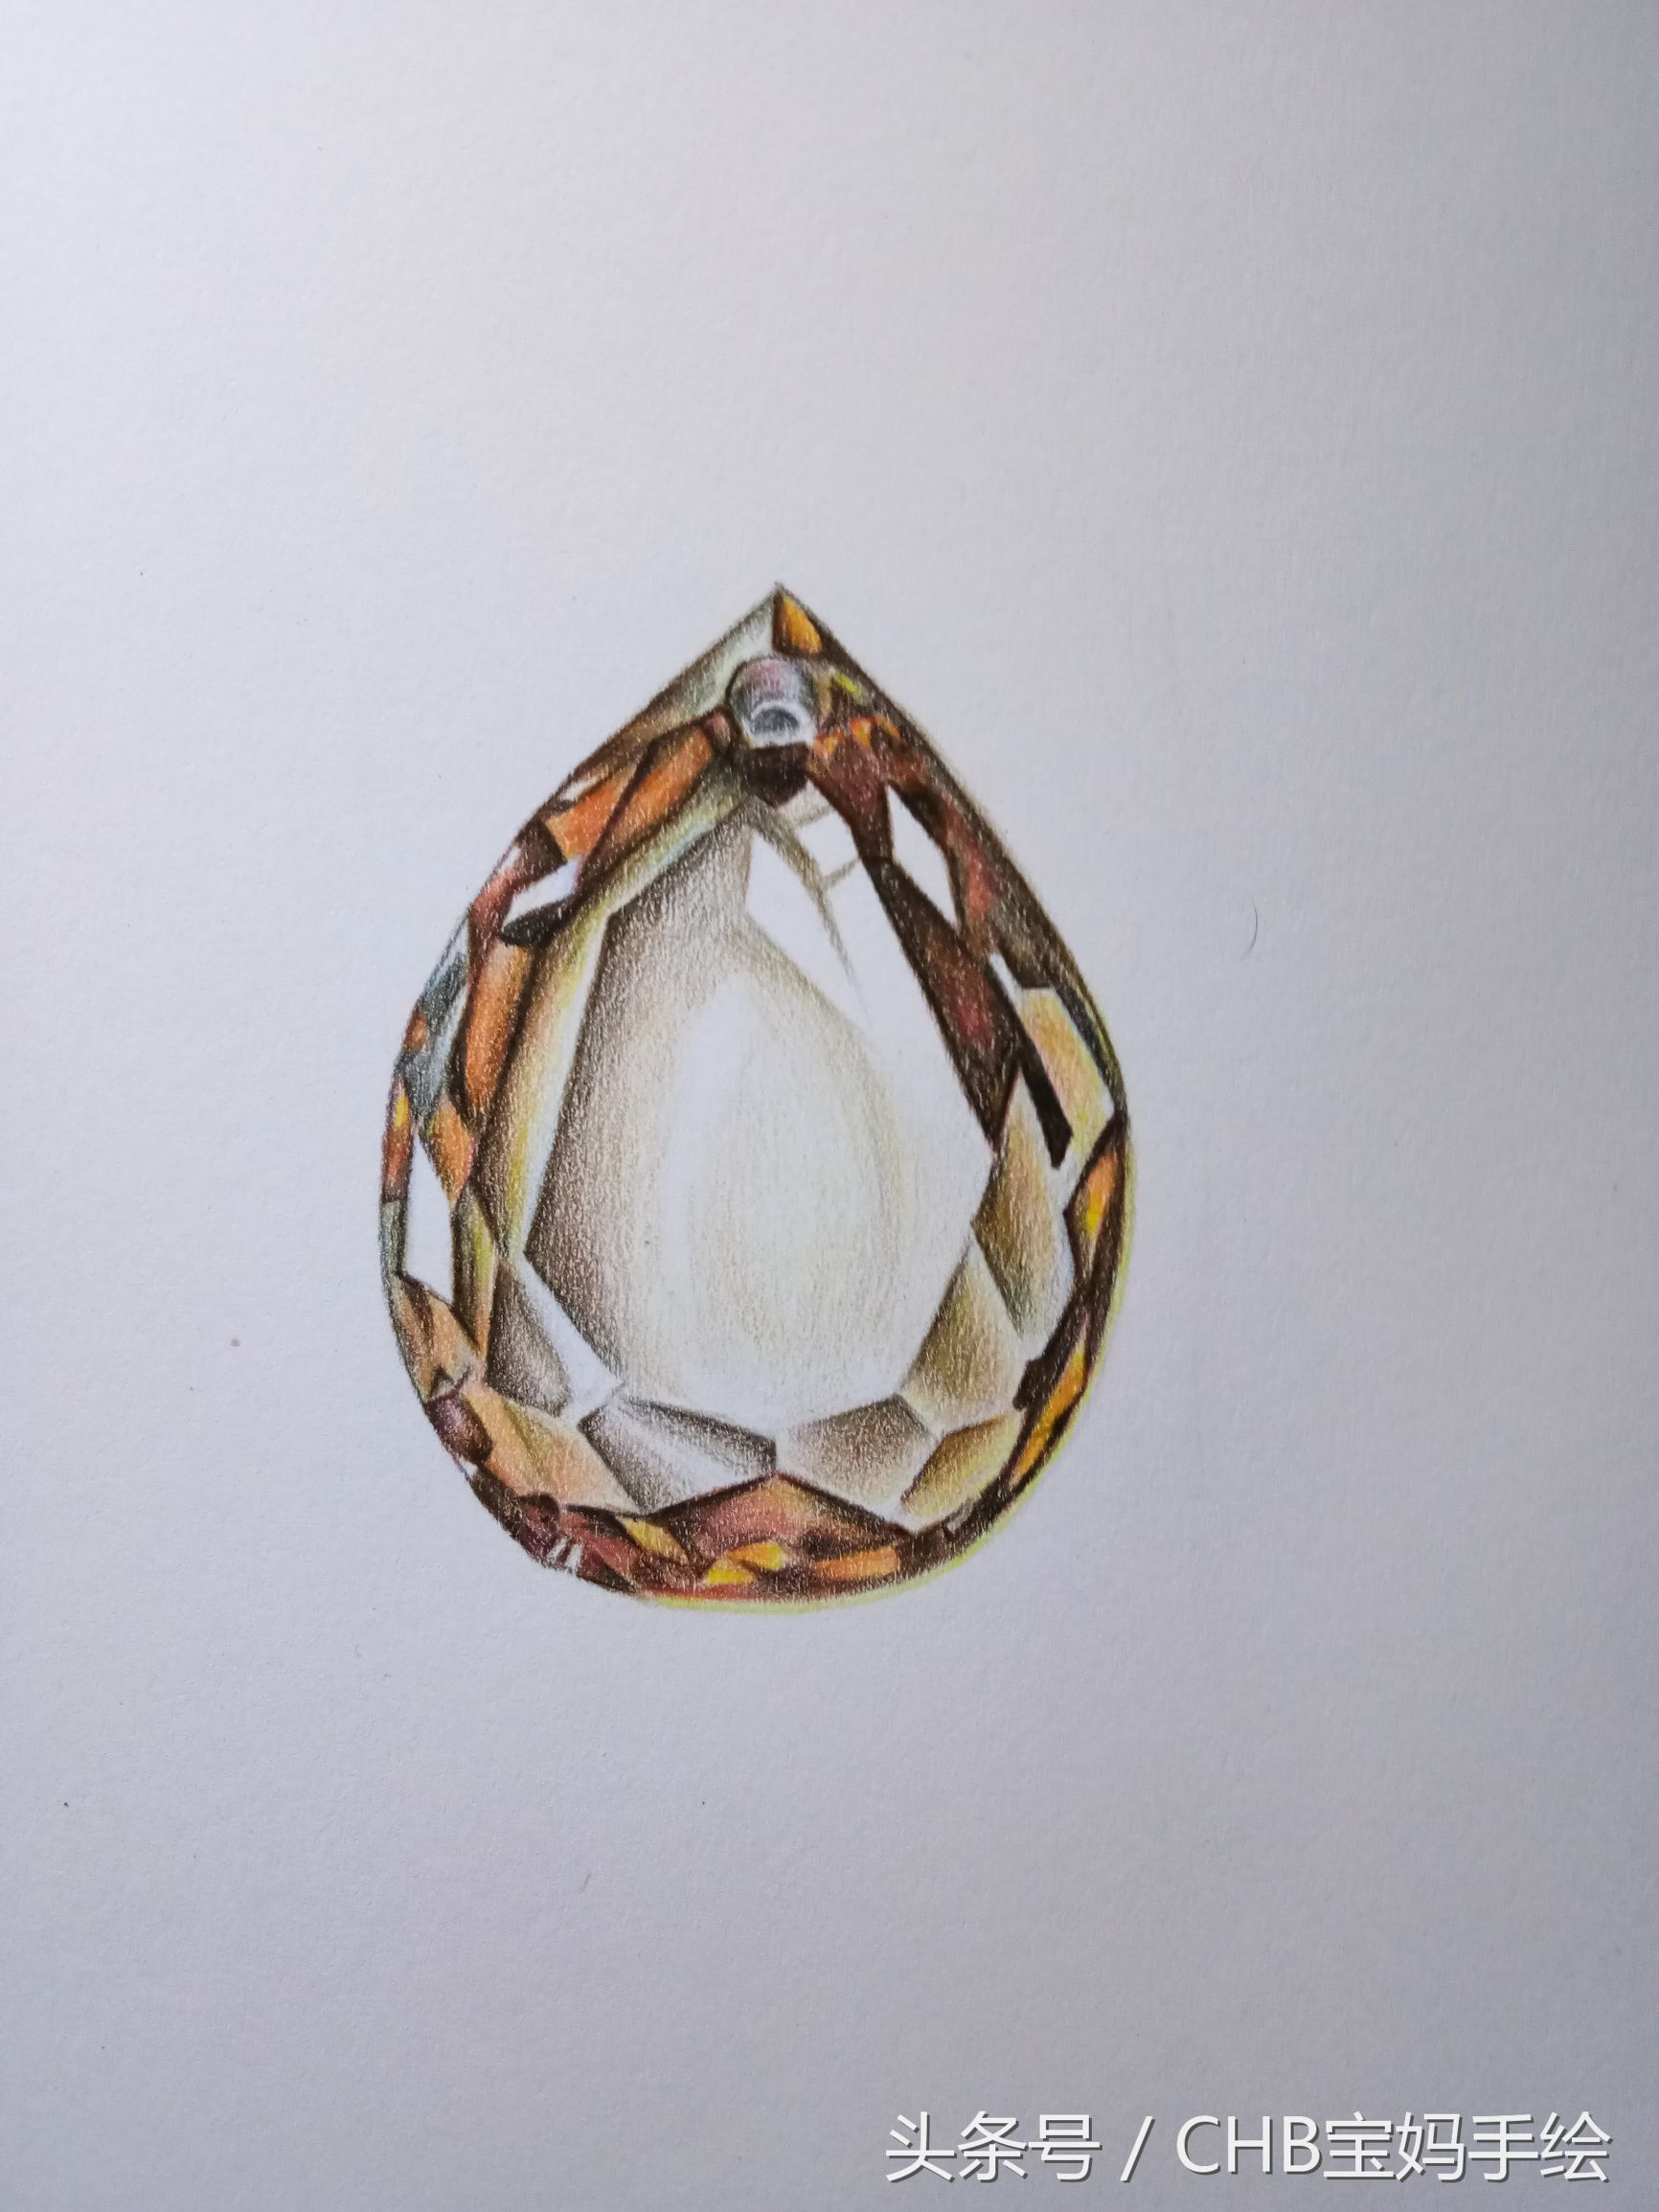 彩铅钻石手绘画法步骤教程（妈妈为孩子学一颗钻石彩铅手绘过程）